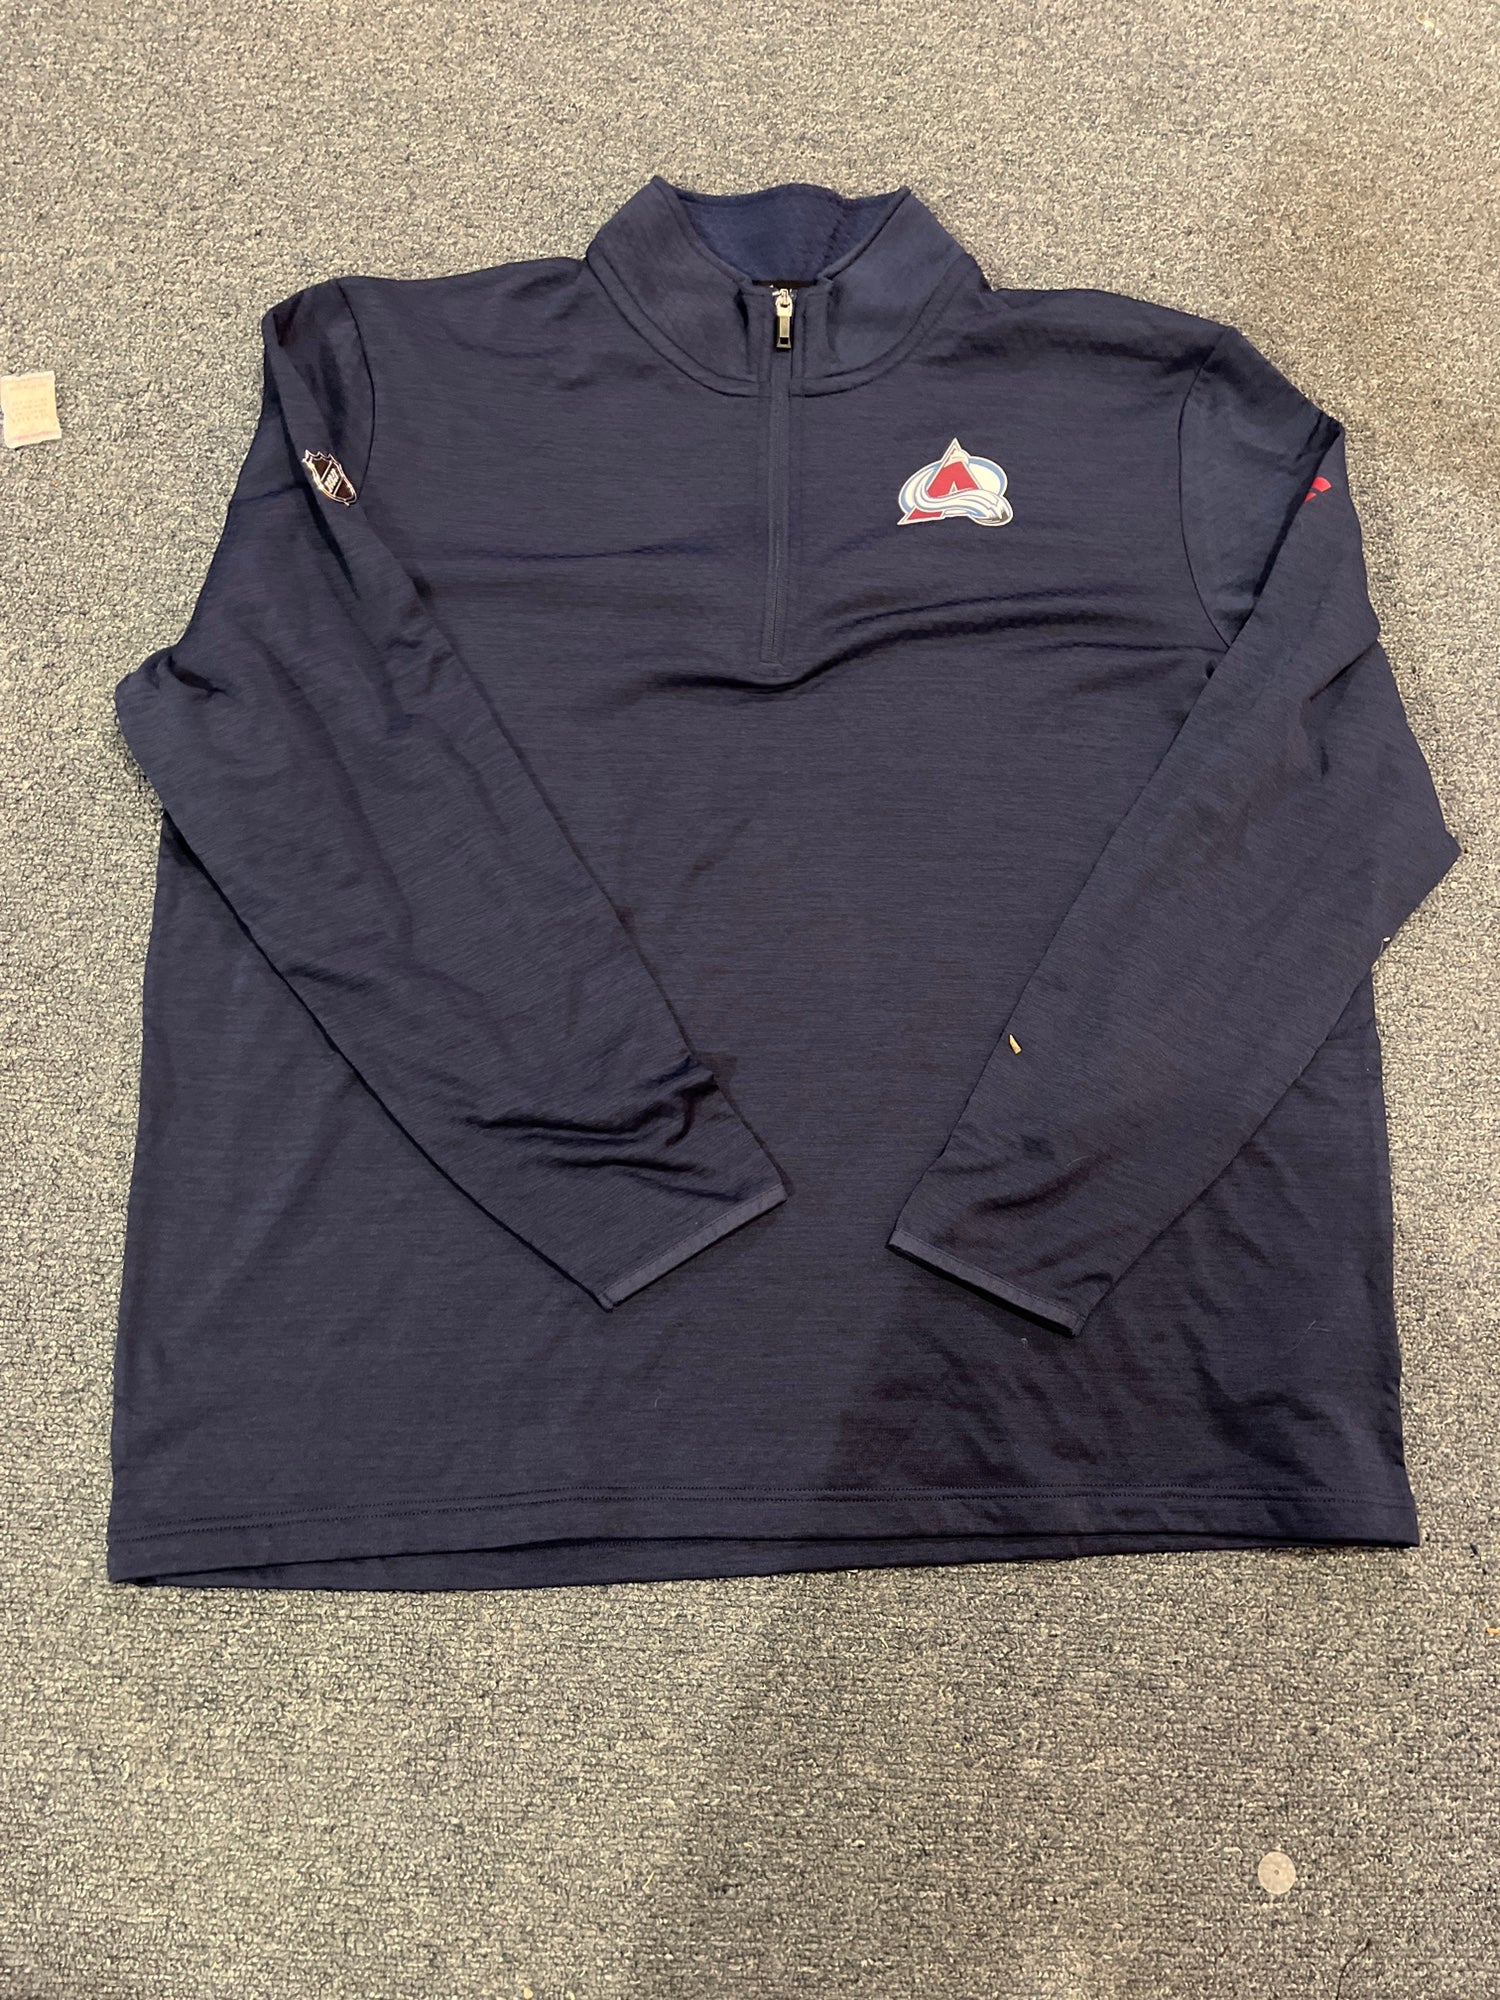 Fanatics NHL Columbus Blue Jackets Vintage Grey Quarter-Zip Pullover Shirt, Men's, Medium, Gray